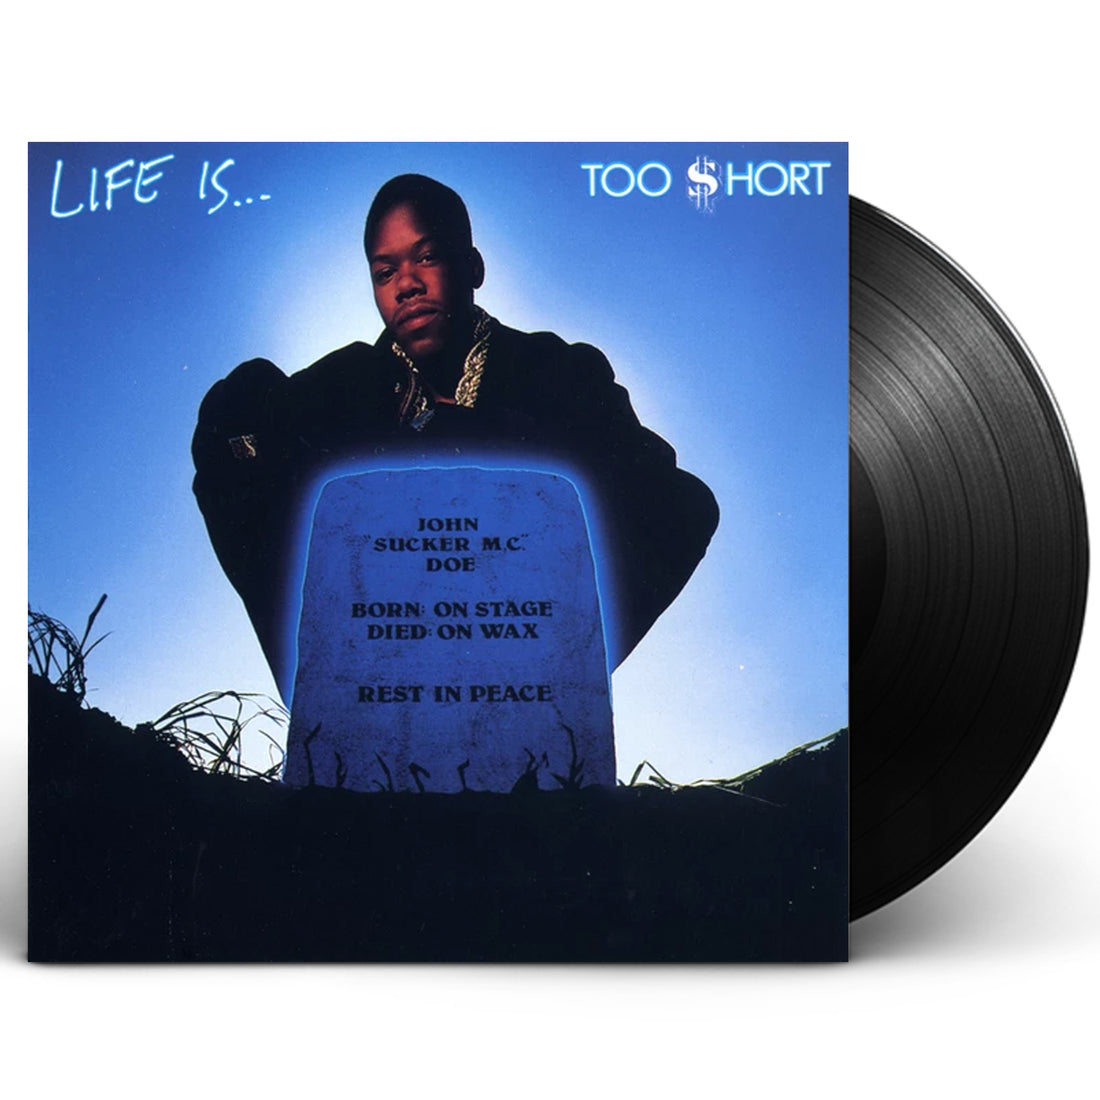 Too $hort 'Life Is...Too Short' LP Vinyl